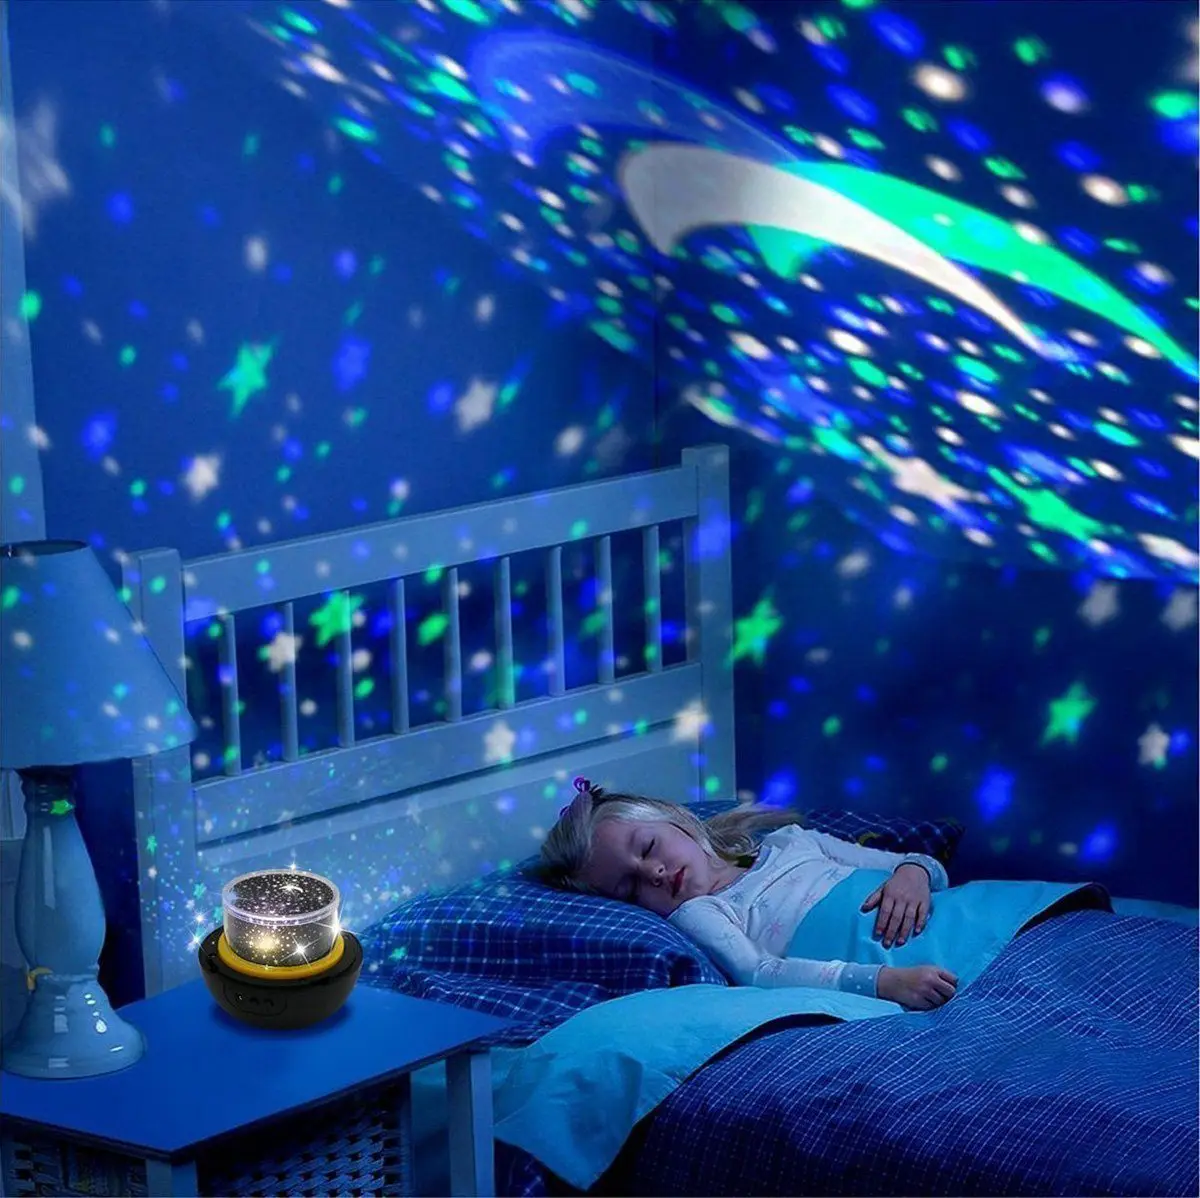 Звездное небо Star Night Lights для детей Вселенная Космос звездное свет проектор Вращающаяся лампа Новинка USB лампа ночник Illu